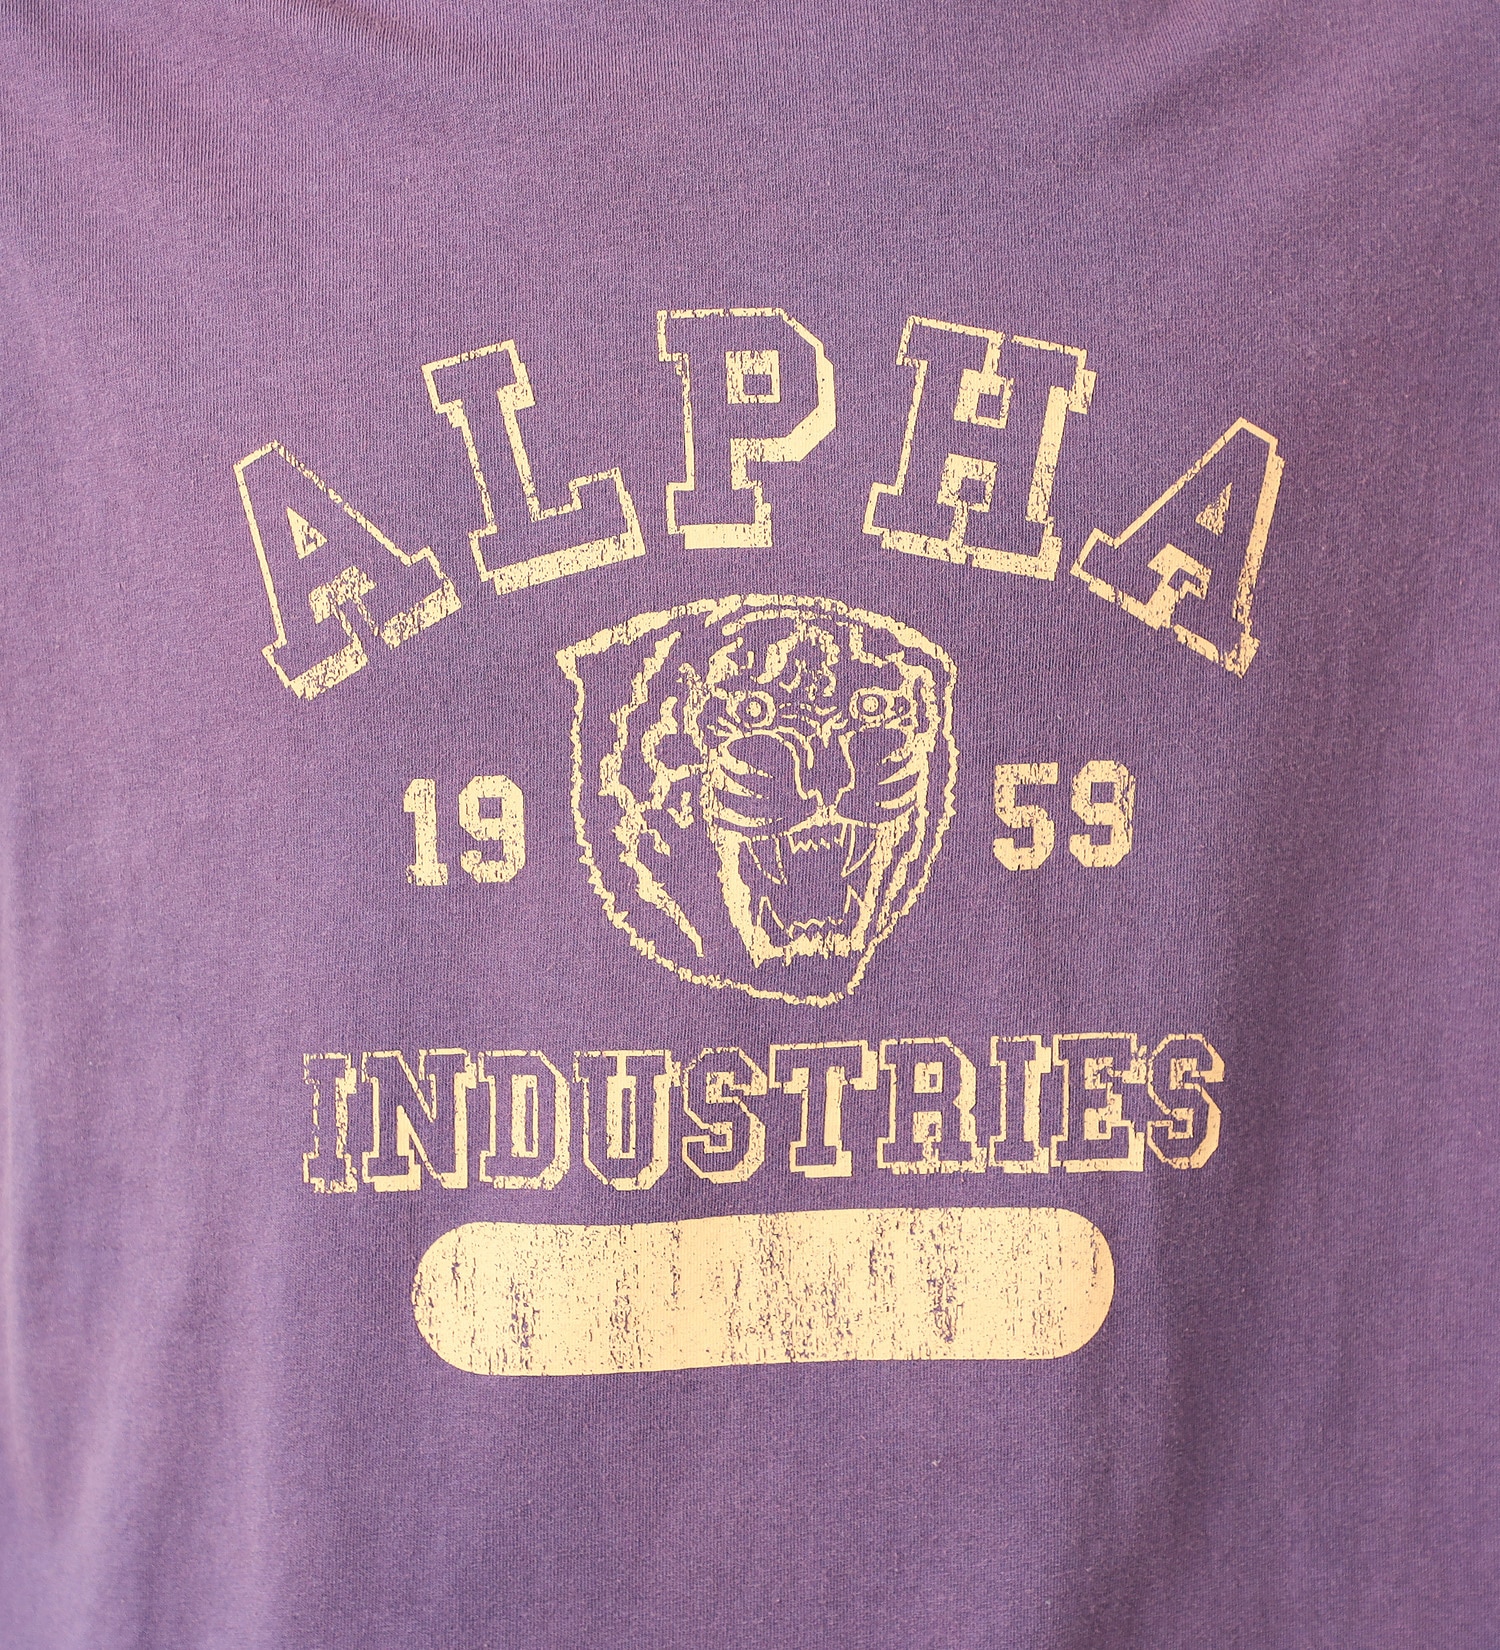 ALPHA(アルファ)のガーメントダイ半袖Tシャツ A.I.|トップス/Tシャツ/カットソー/メンズ|パープル